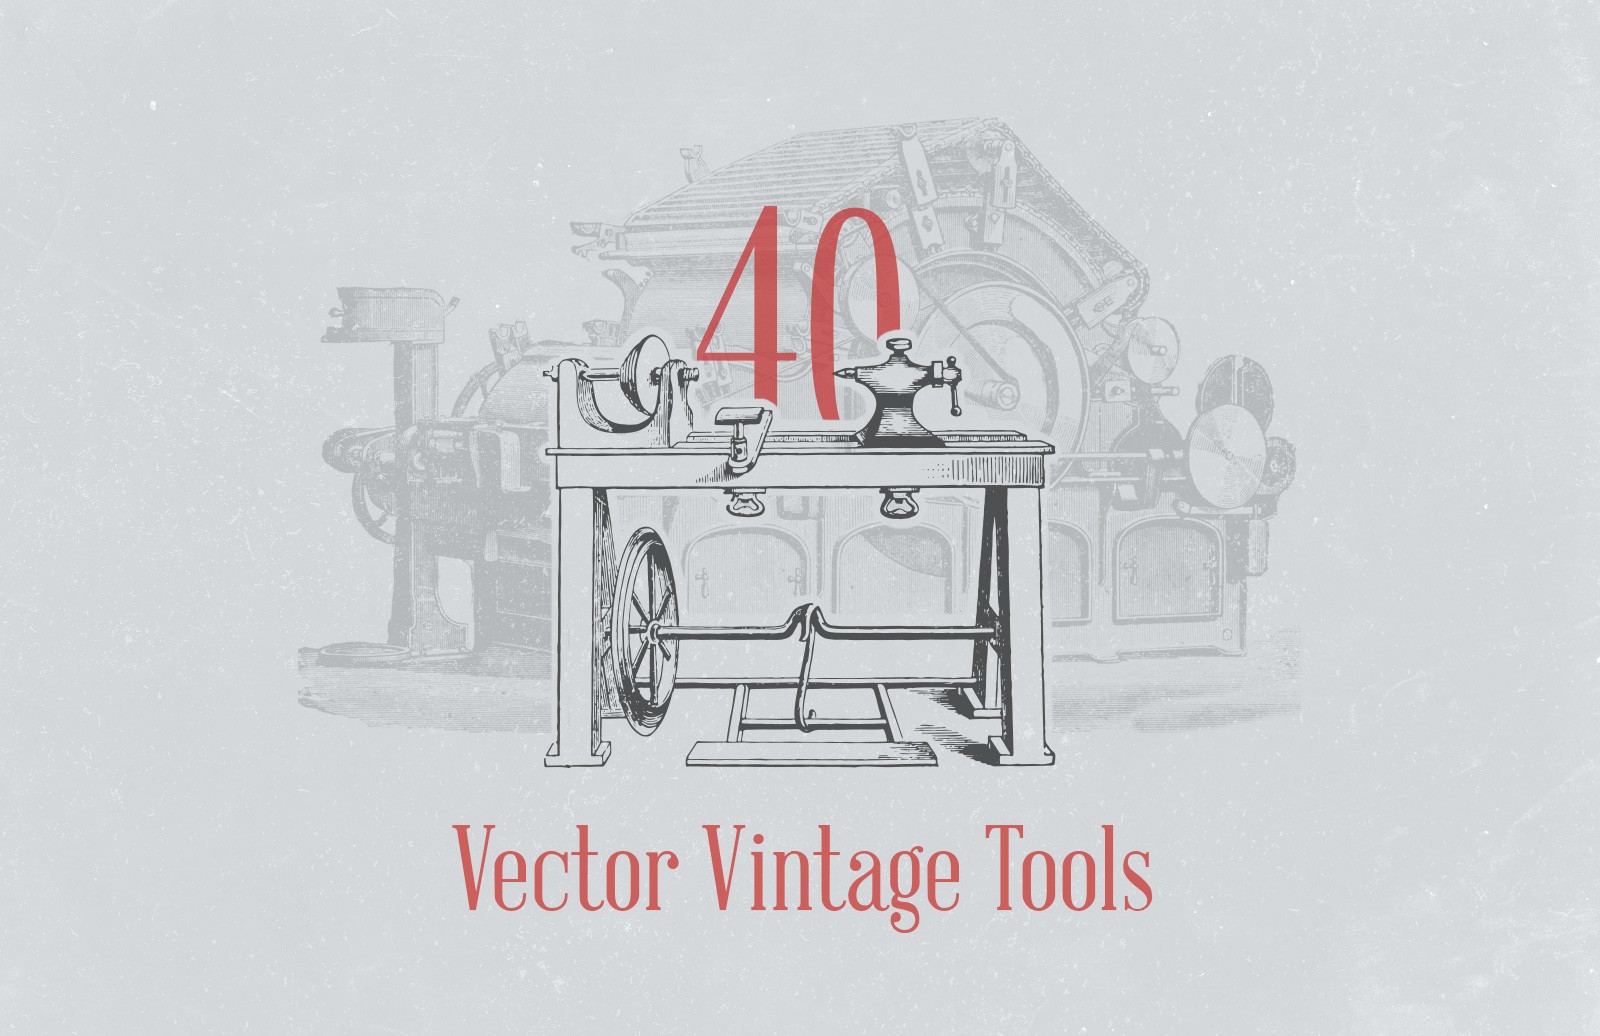 复古生产工具矢量插画素材 Vector Vintage Tool Illustrations插图